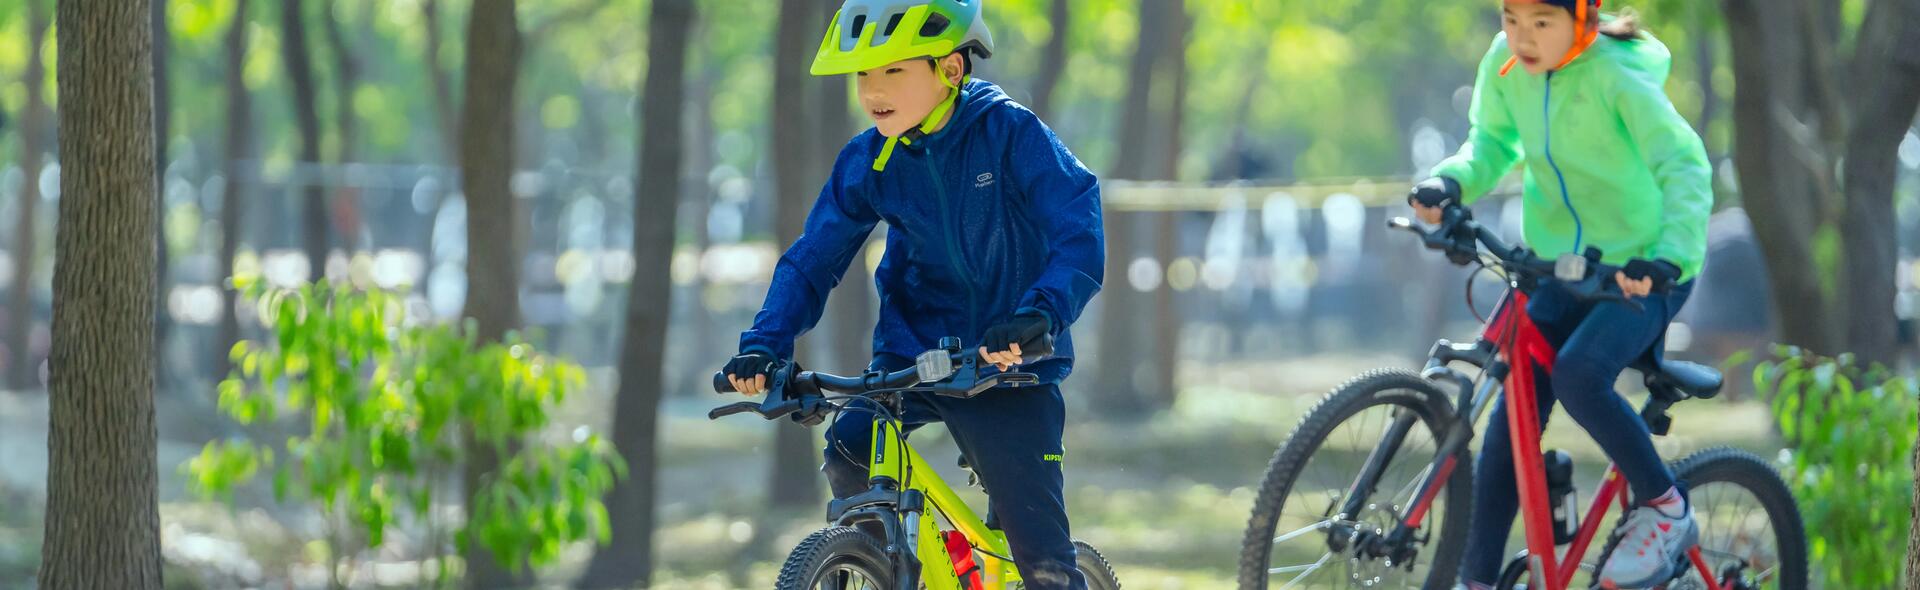 Quelle taille de vélo choisir pour vos enfants?